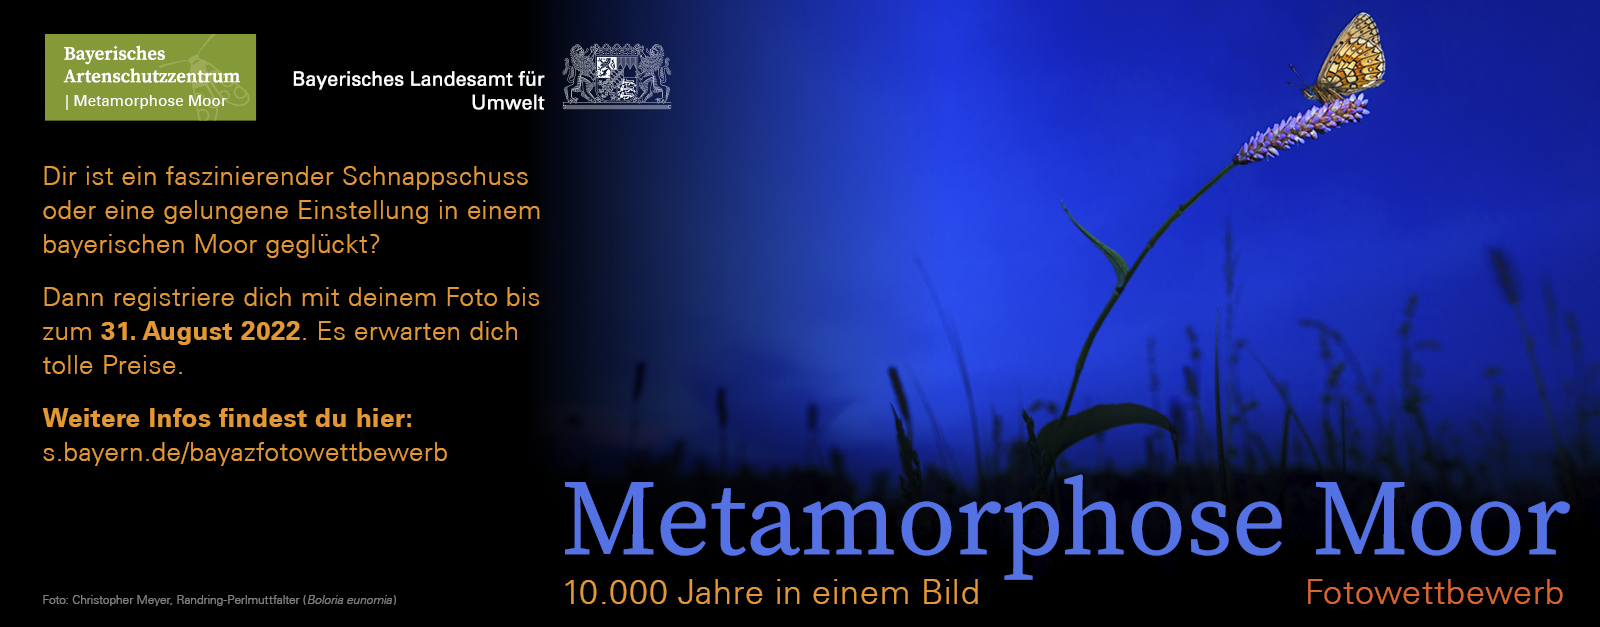 Fotowettbewerb Metamorphose Moor